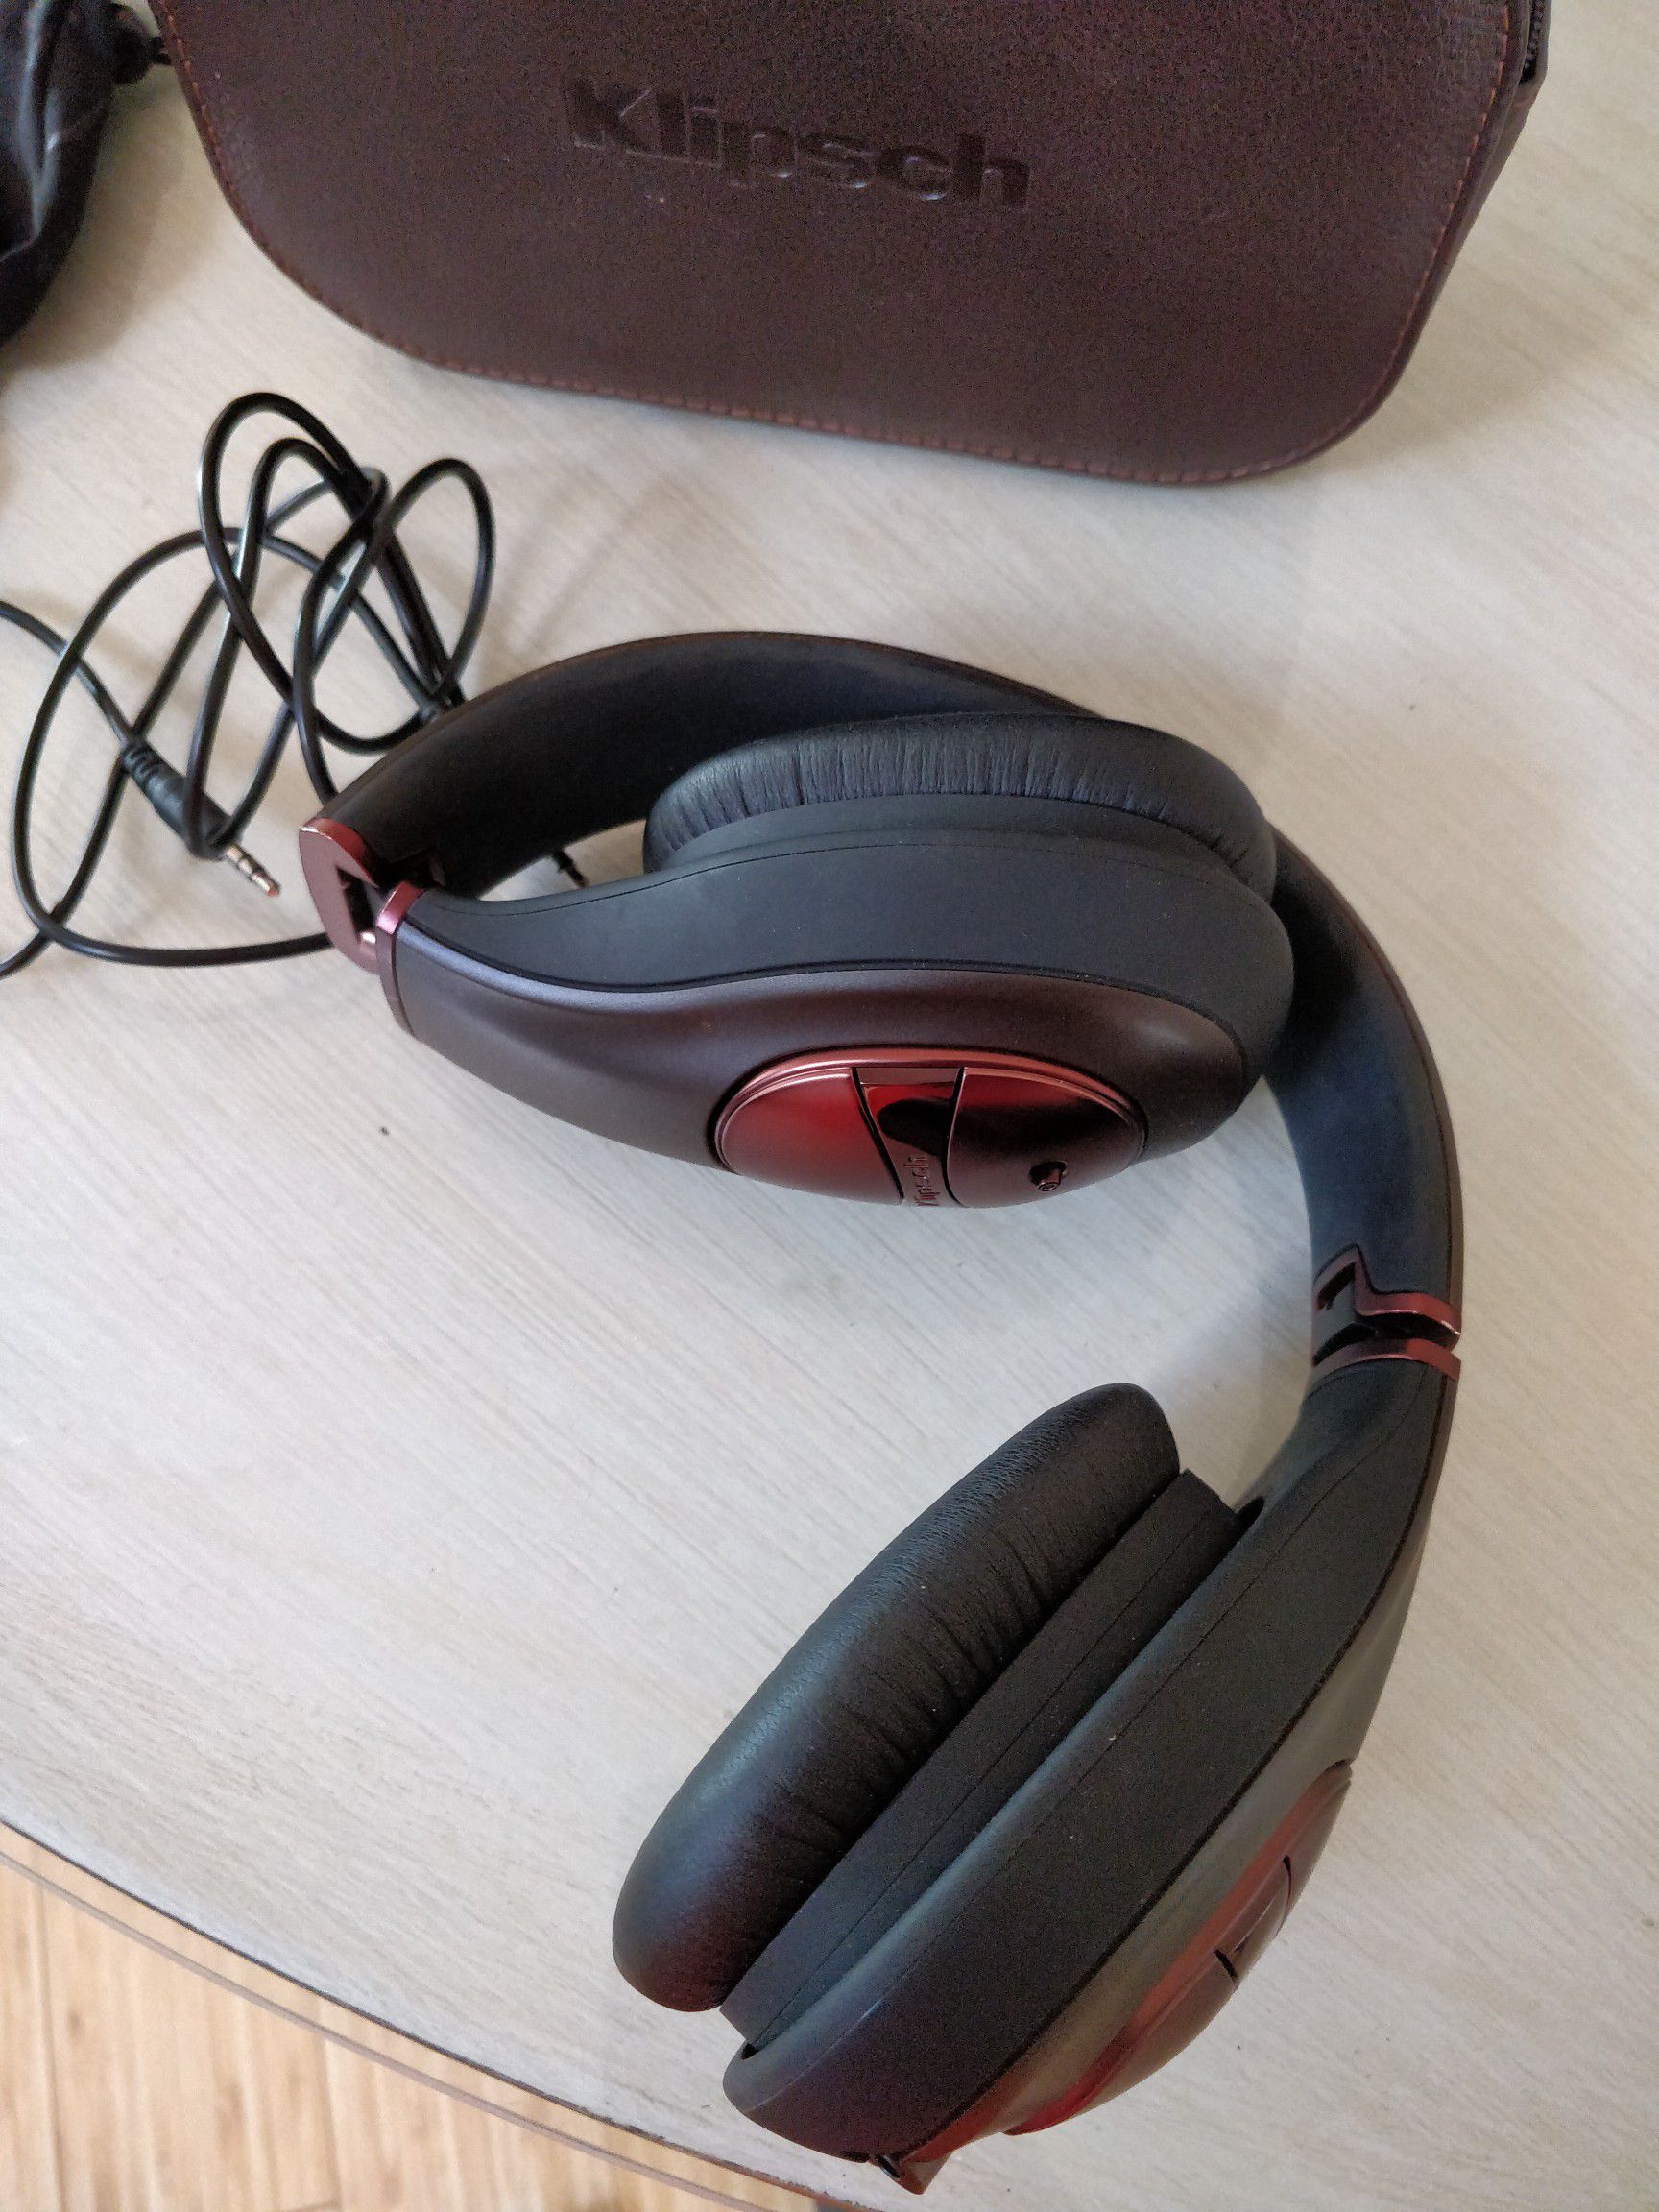 Klipsch M40 headphones